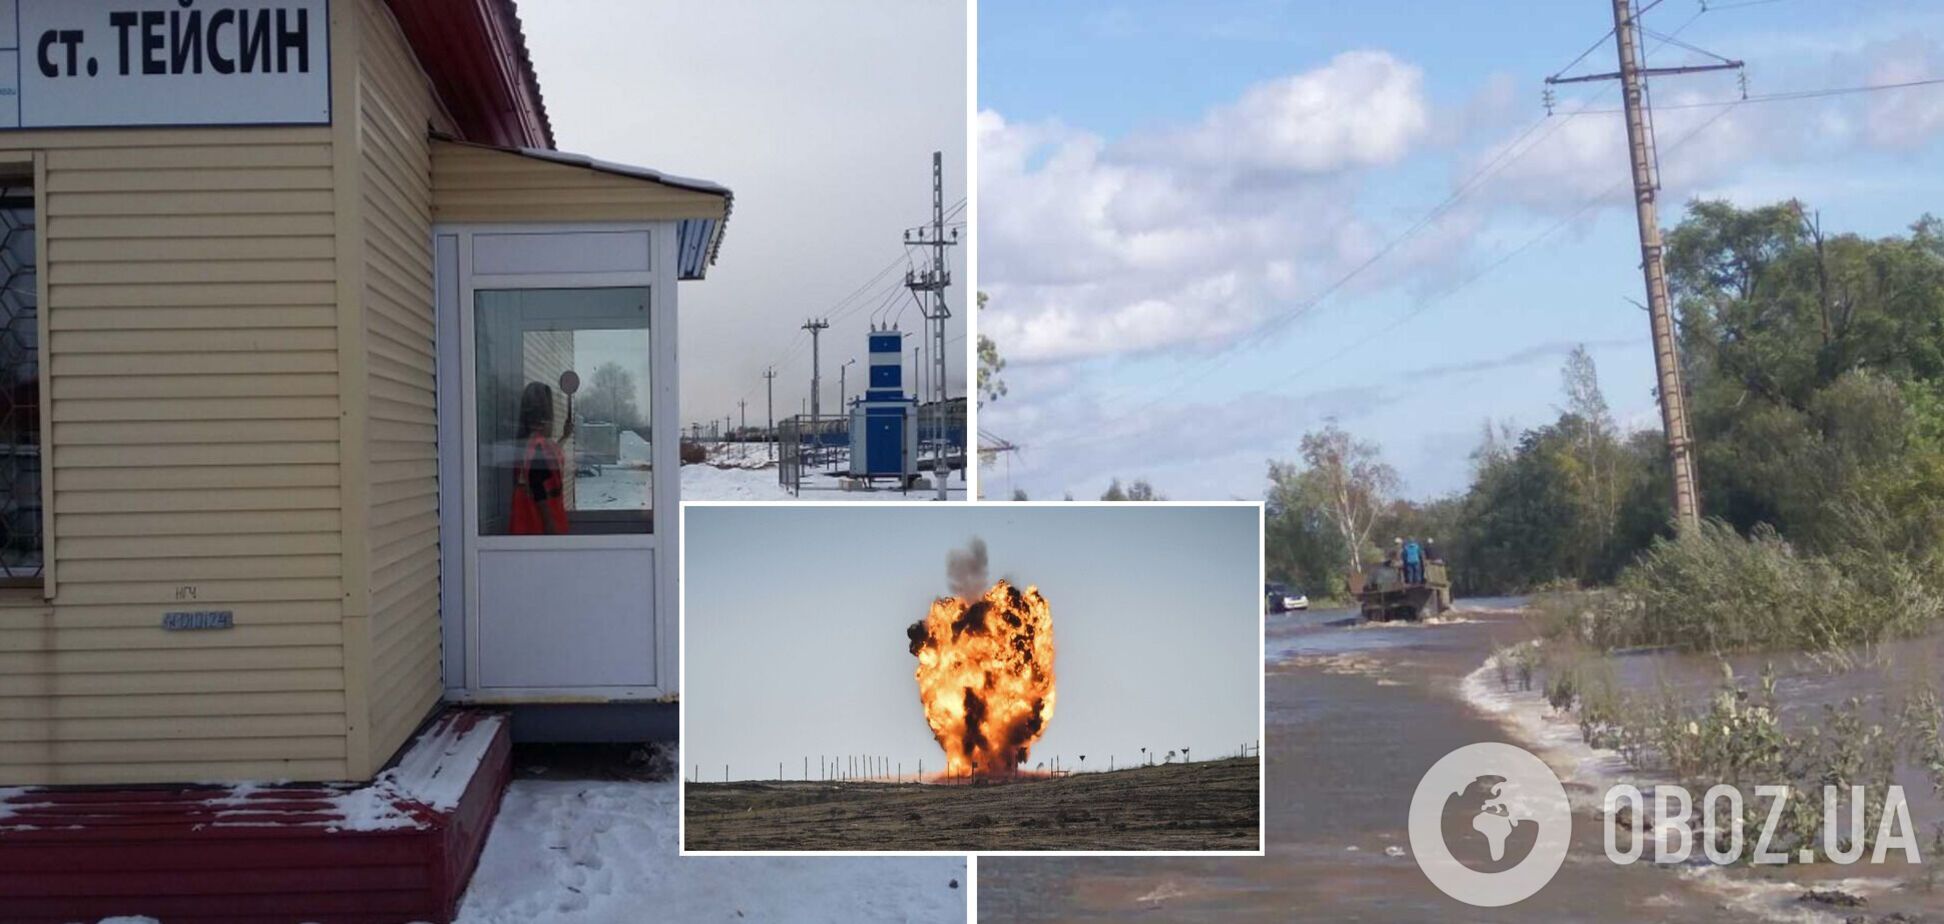 В Хабаровском крае прогремел взрыв в воинской части: есть погибший и пострадавшие